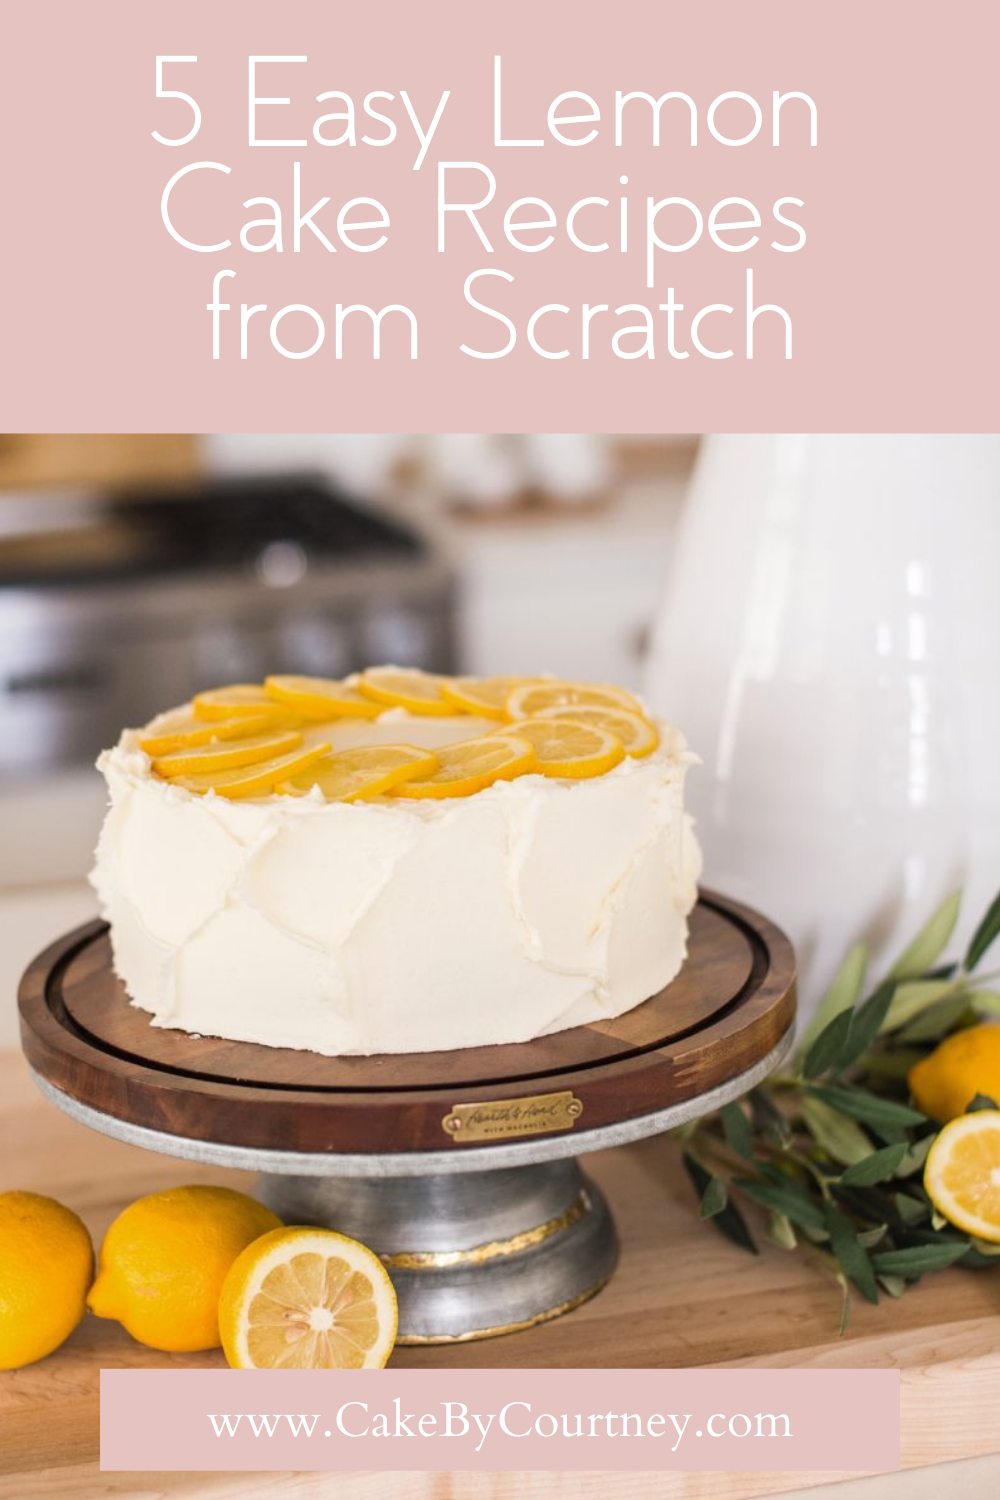 5 easy lemon cake recipes from scratch. www.cakebycourtney.com